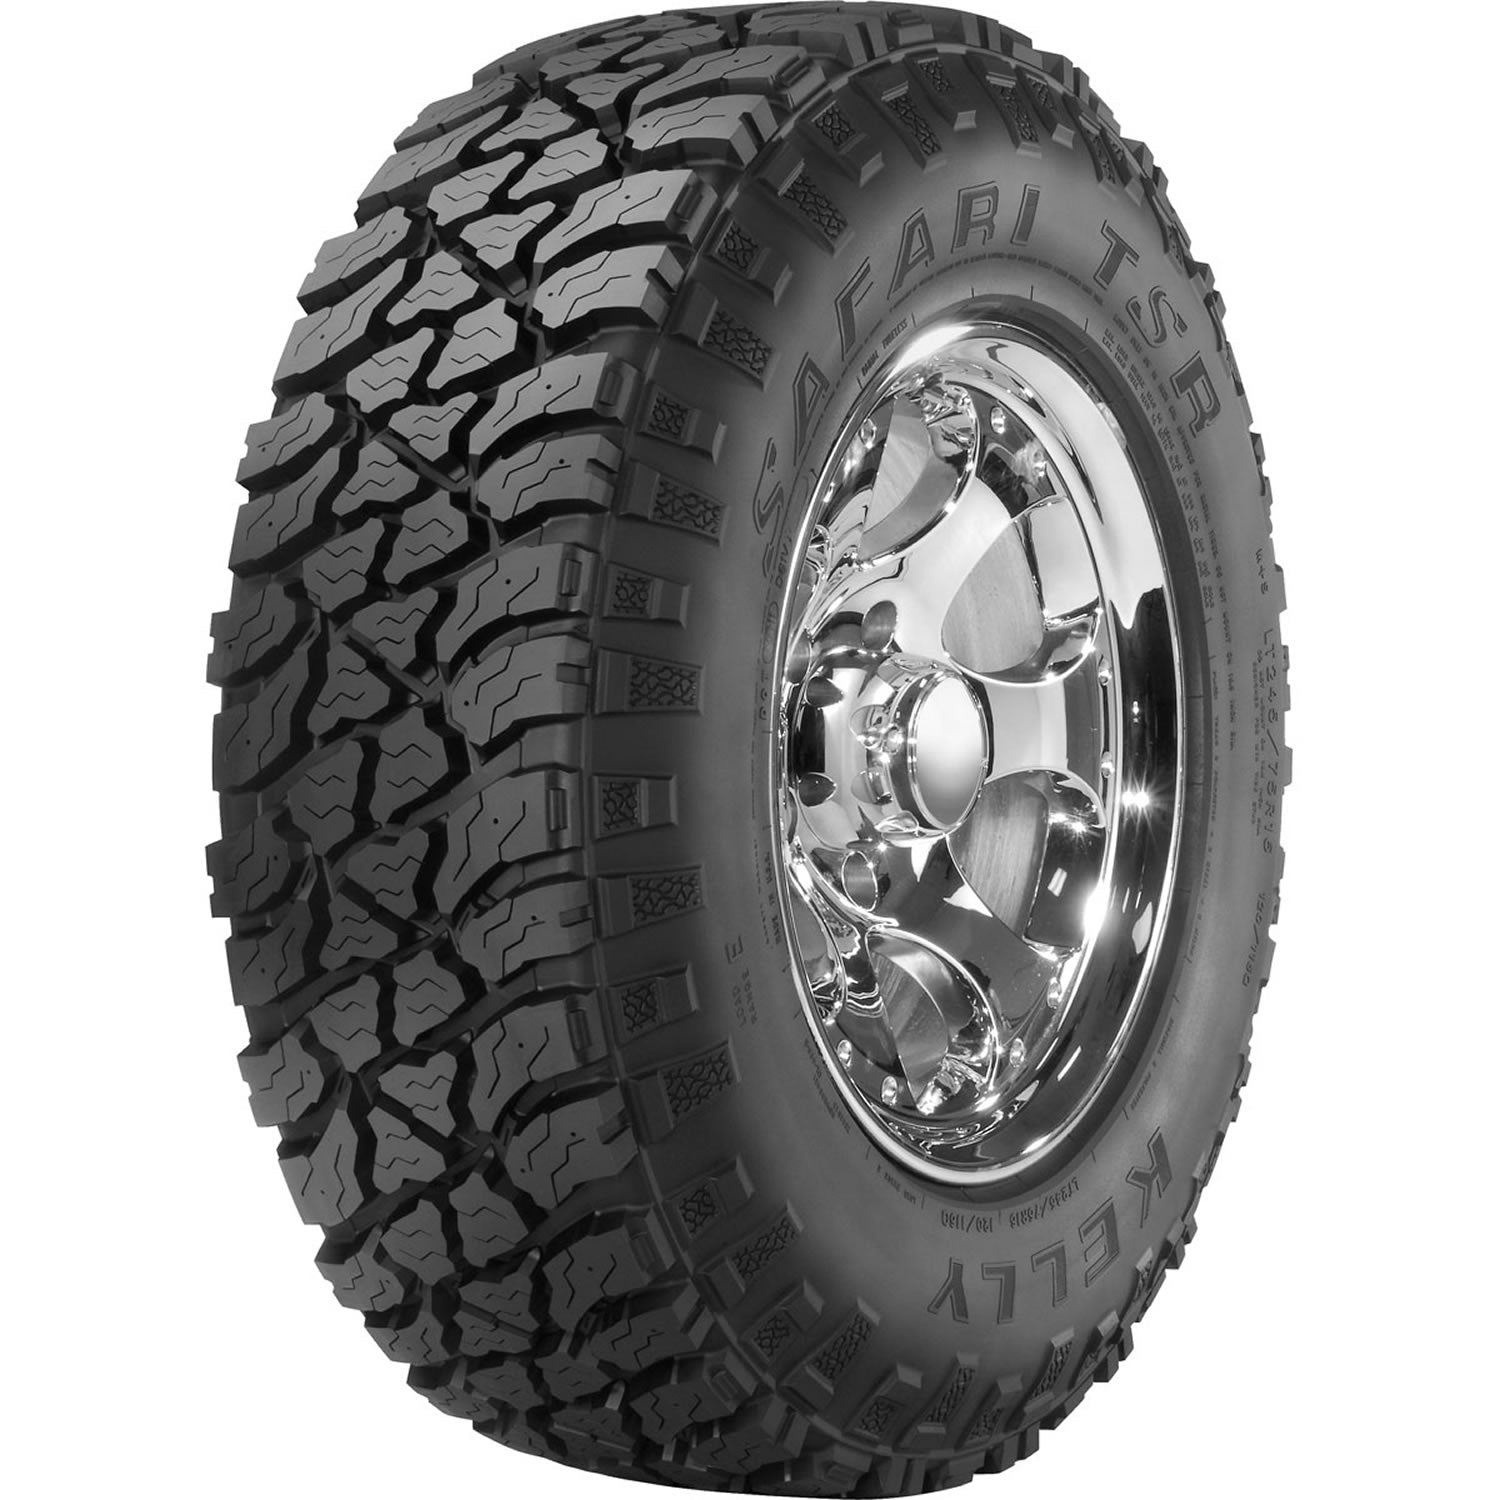 KELLY SAFARI TSR LT265/75R16 (31.7X10.5R 16) Tires